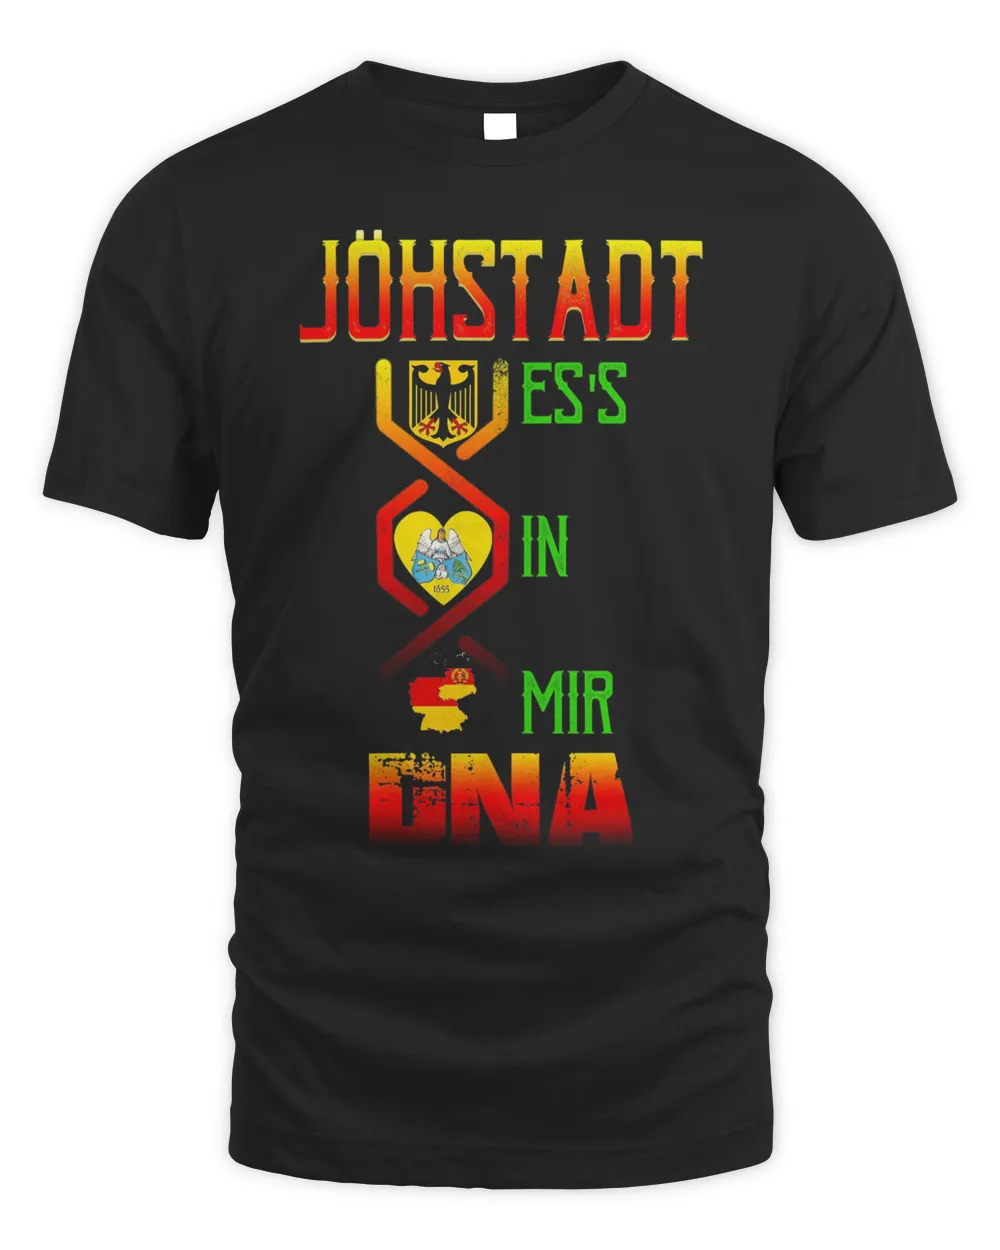 Johstadt Es's In Mir Dna Shirt